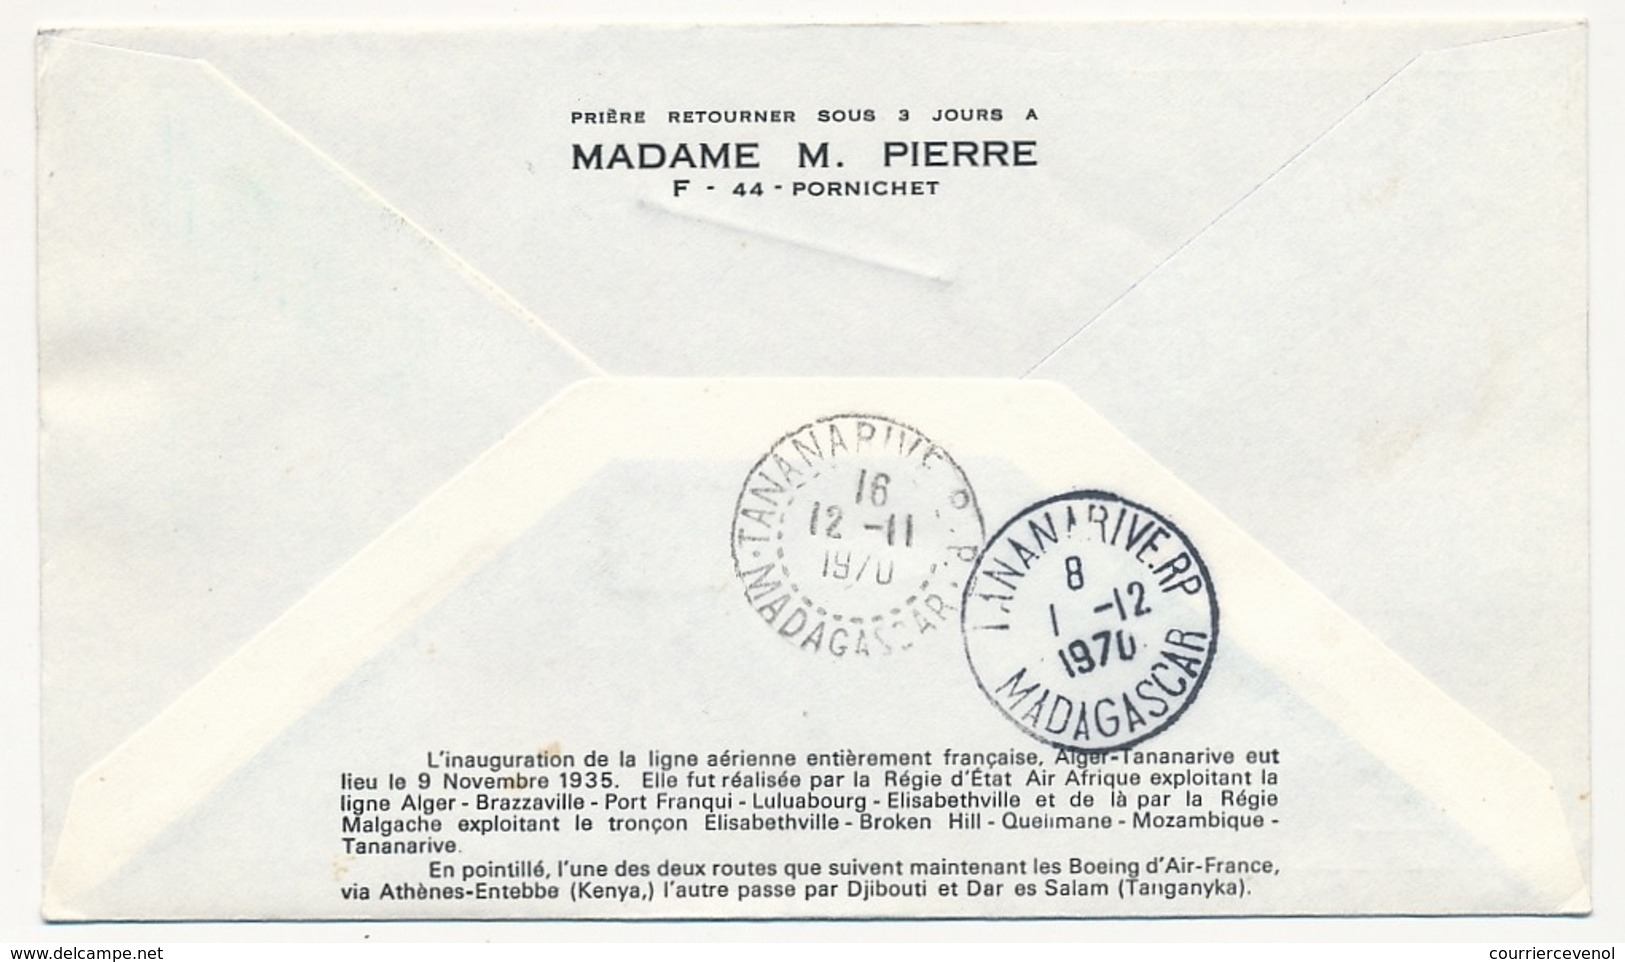 FRANCE / MADAGASCAR - 2 Enveloppes 35eme Anniversaire Du Ier Service Aérien Régulier France Madagascar 1935/1970 - Premiers Vols